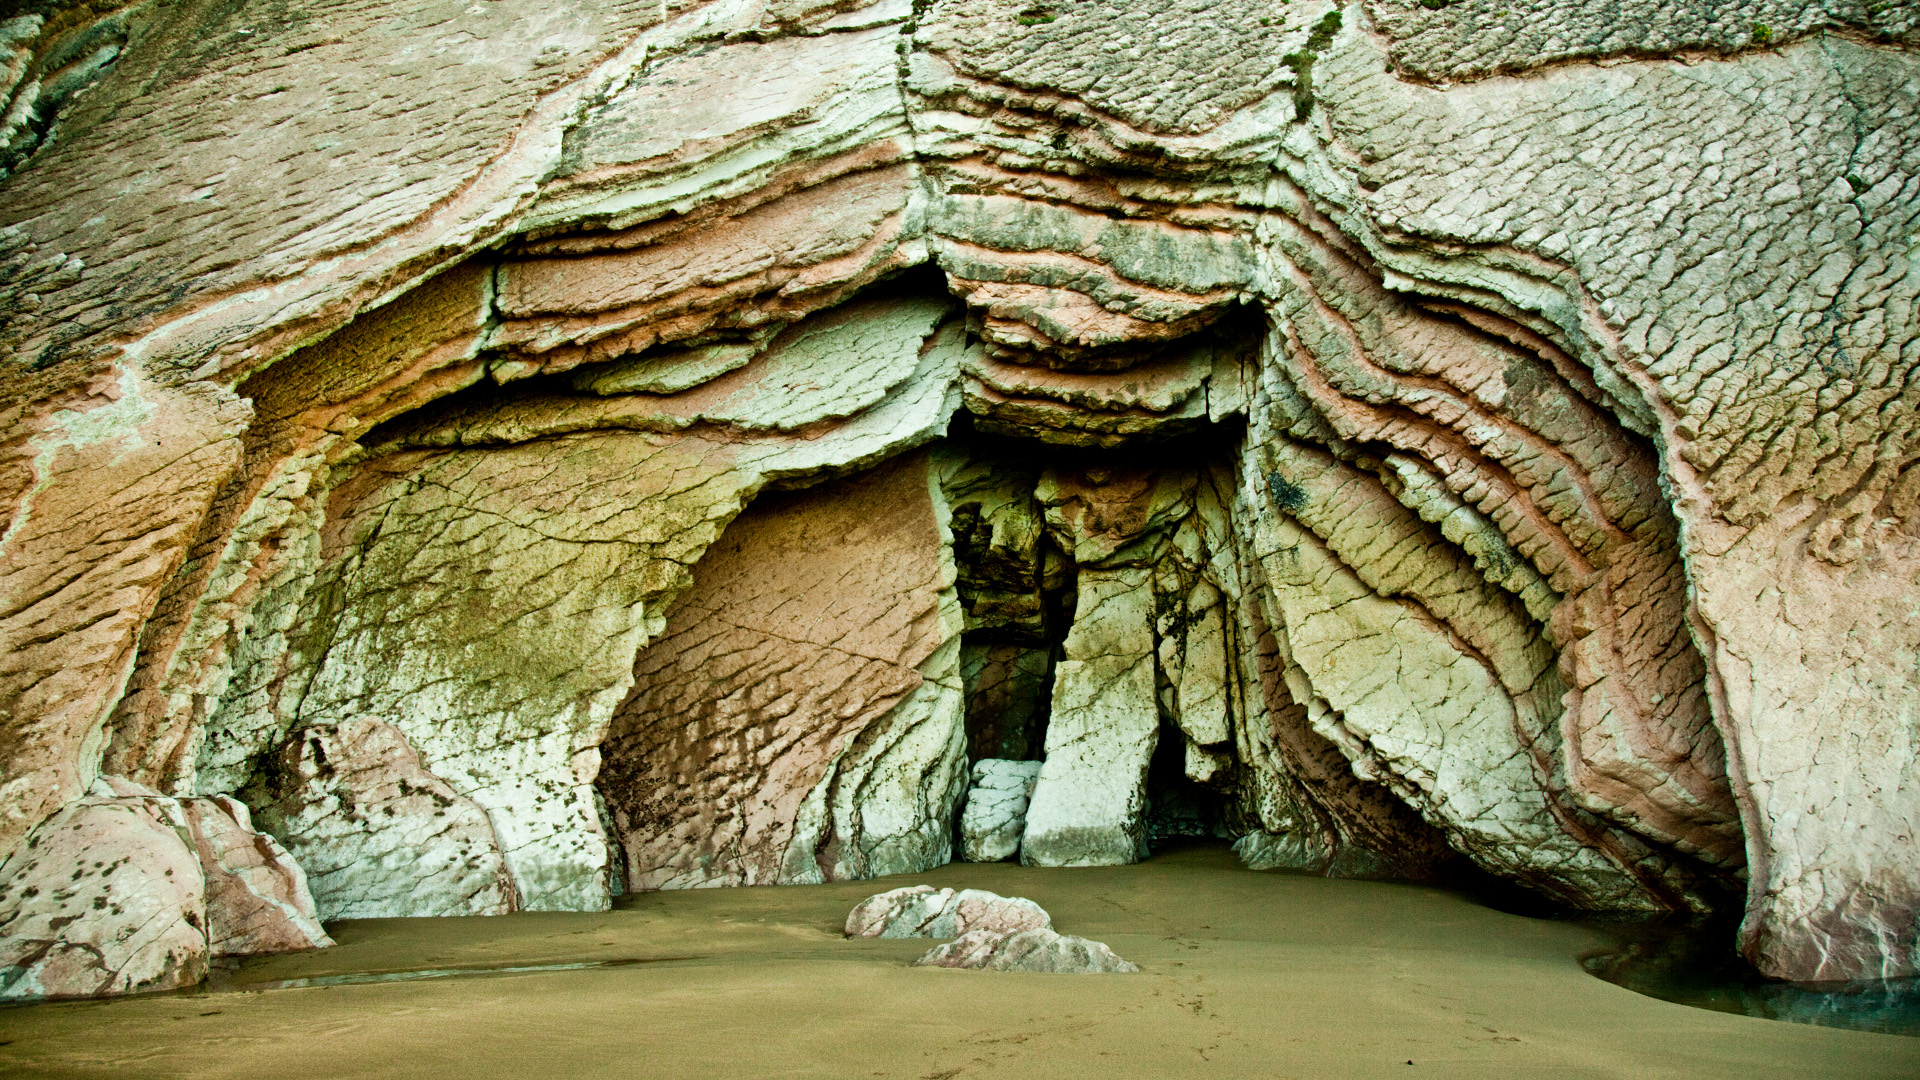 Скачать картинку Пещеры, Пещера, Земля/природа в телефон бесплатно.